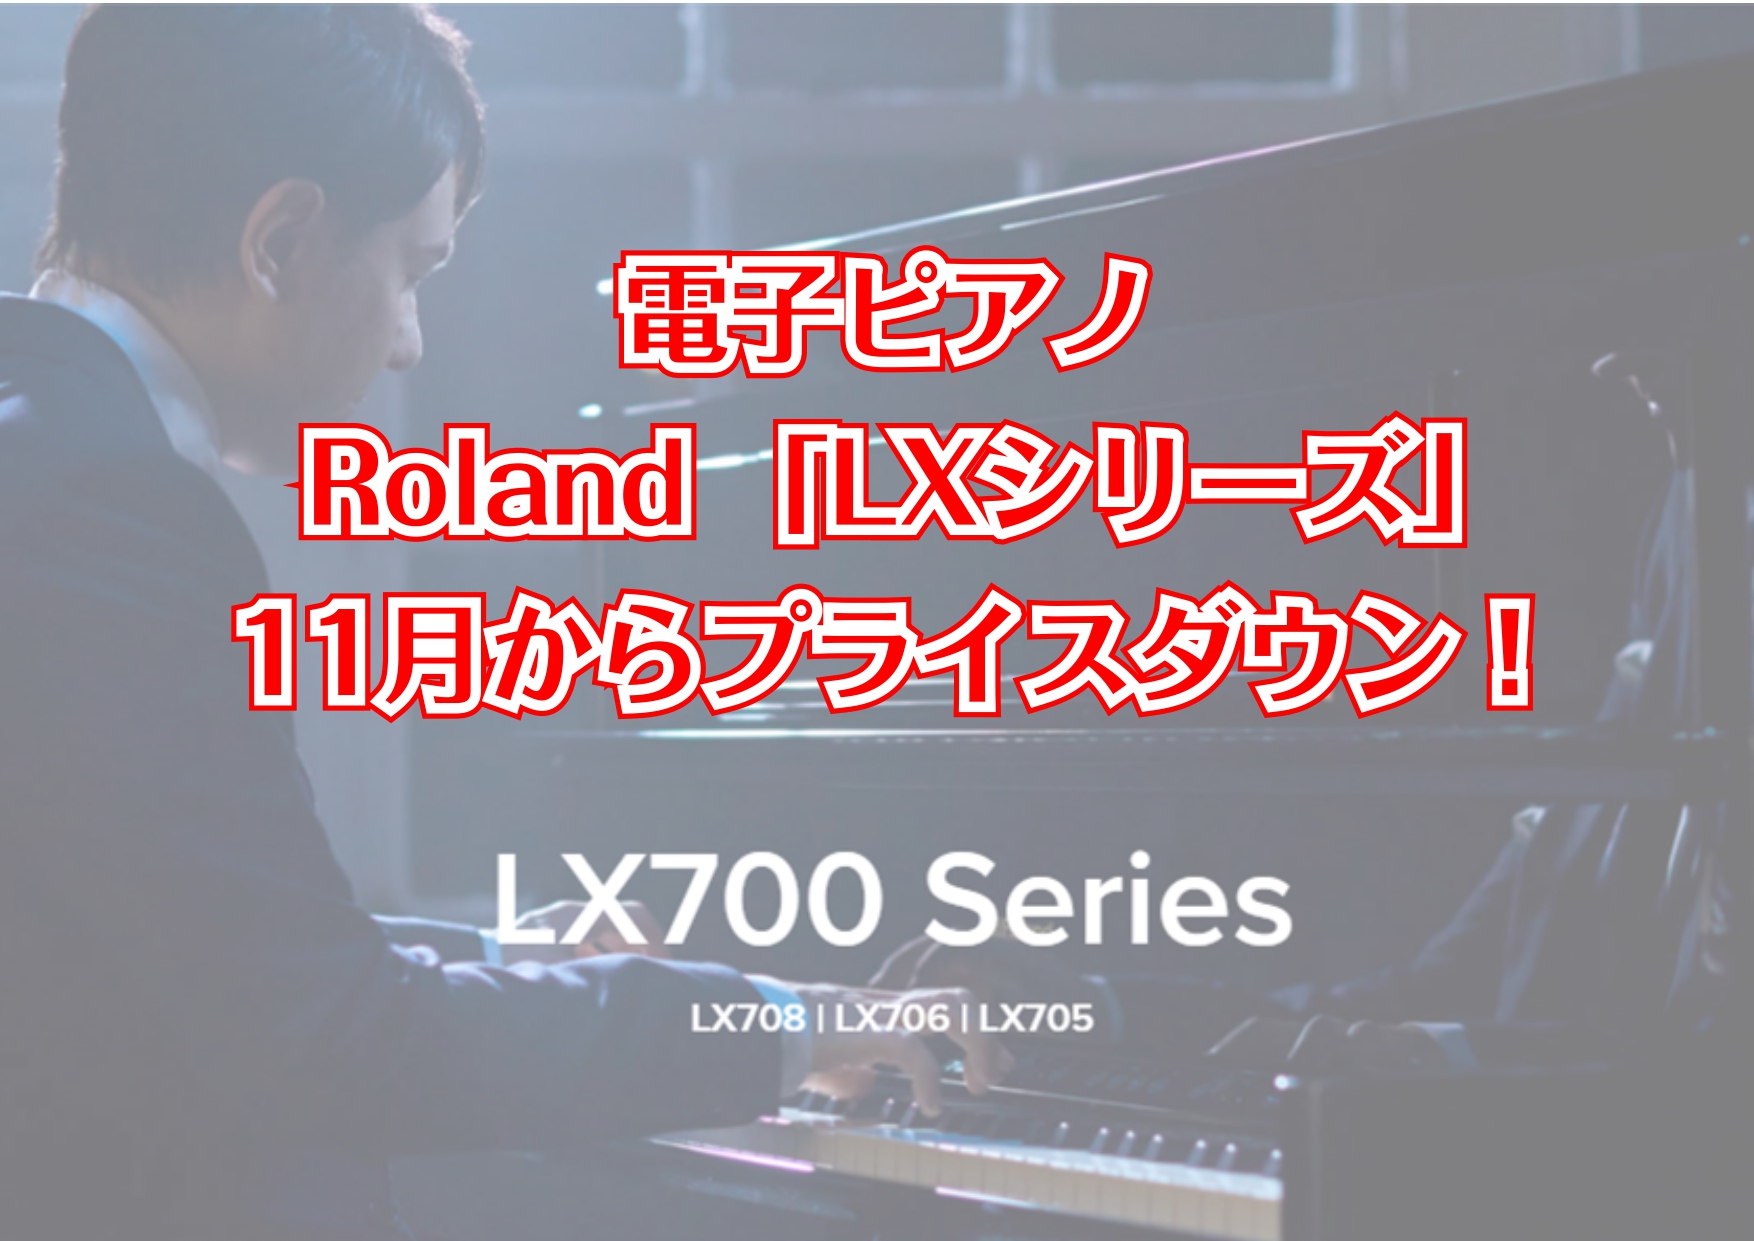 ピアノアドバイザーの市丸（いちまる）です。 私がおすすめするRolandのLXシリーズが11月よりプライスダウンになりました！！ぜひこの機会に一度LXシリーズの良さをご体感ください。 プライスダウン商品のご紹介（写真は展示中のカラーになります） CONTENTSRoland展示中のアップライトピアノ […]